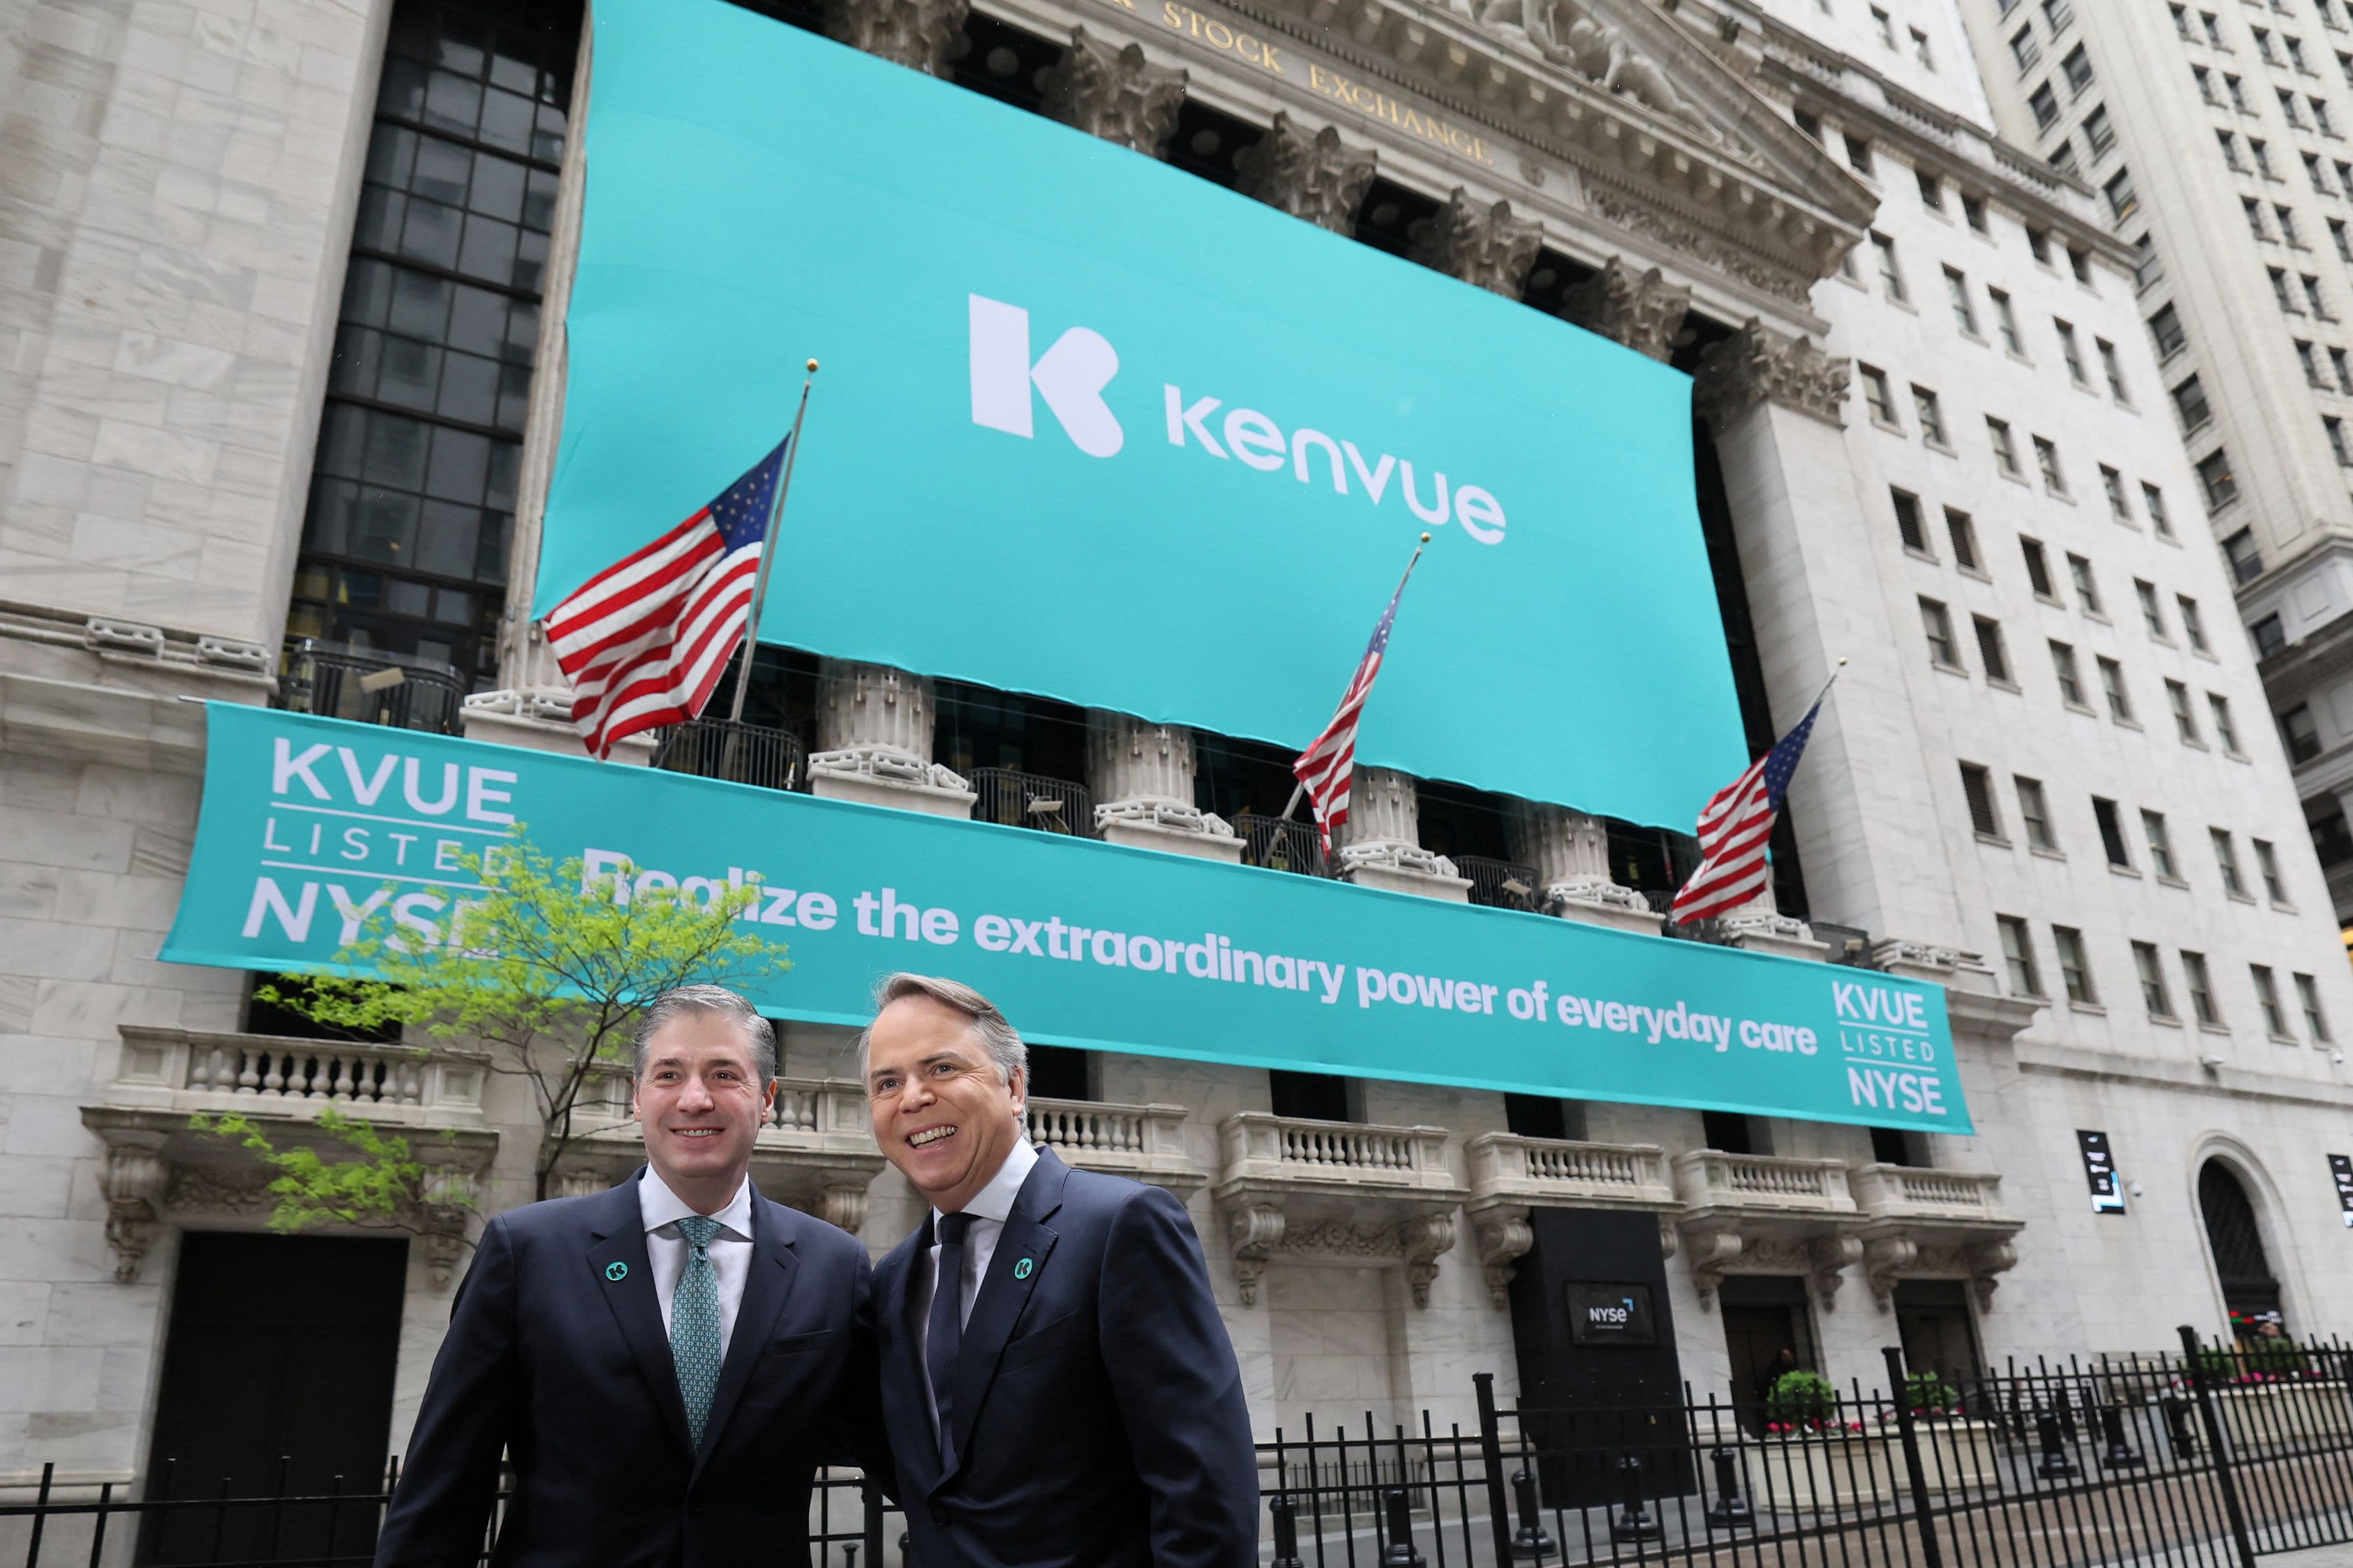 KVUE न्यूयॉर्क स्टॉक एक्सचेंज में कारोबार शुरू करता है